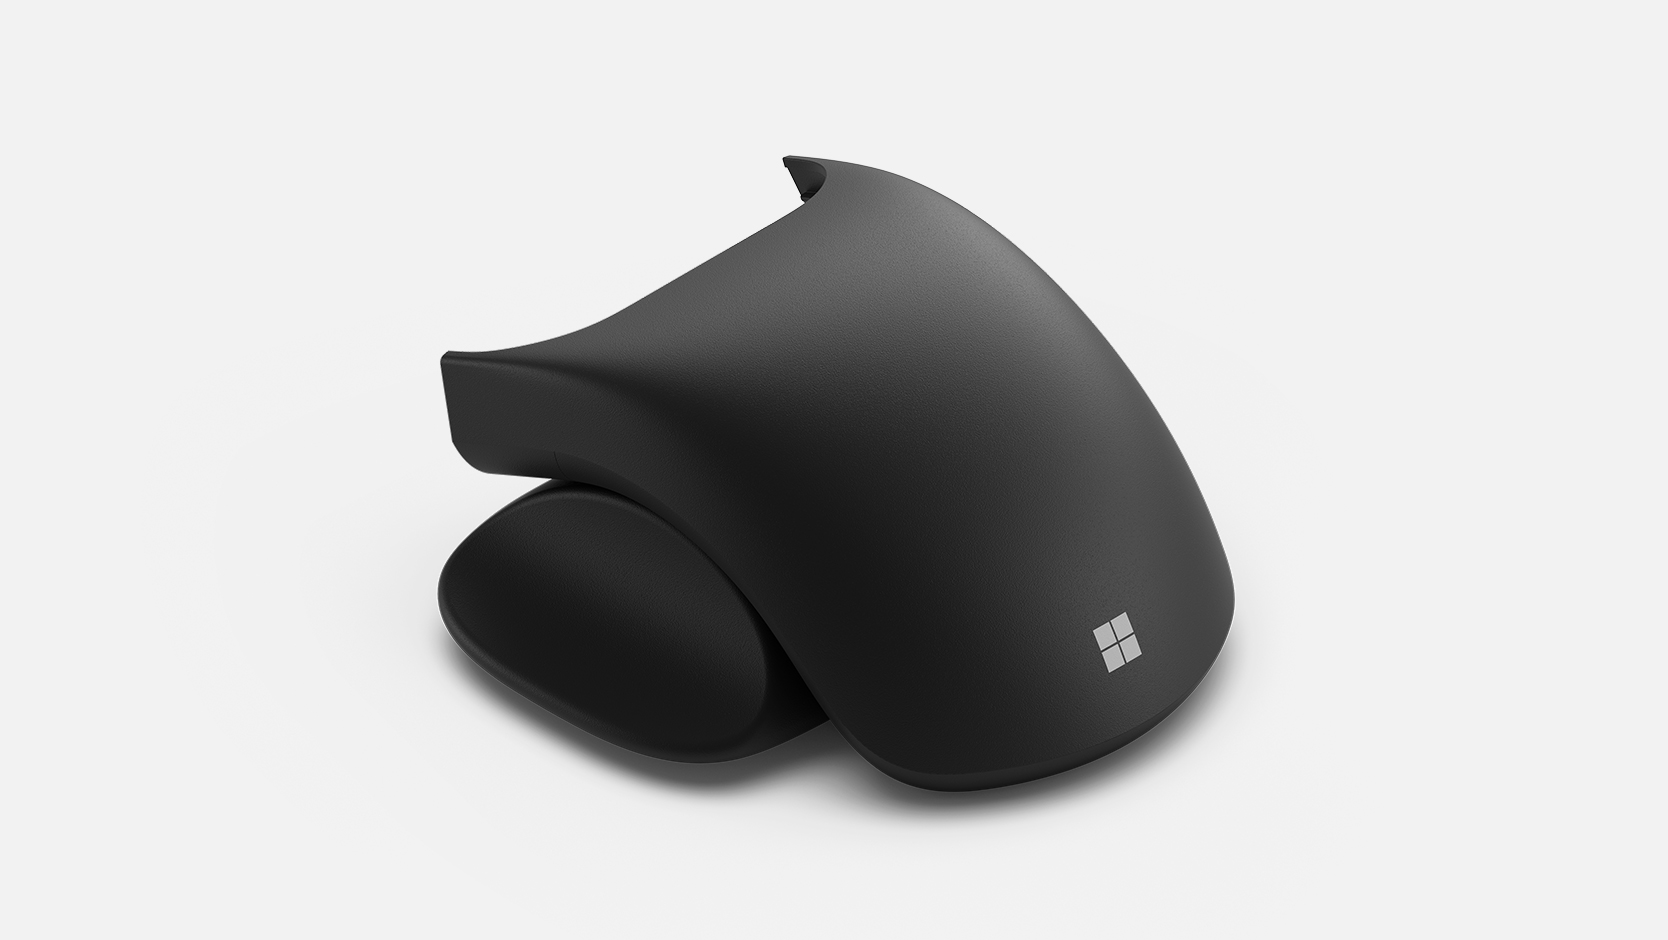 Weergave van Microsoft adaptieve muisstaart en duimsteun